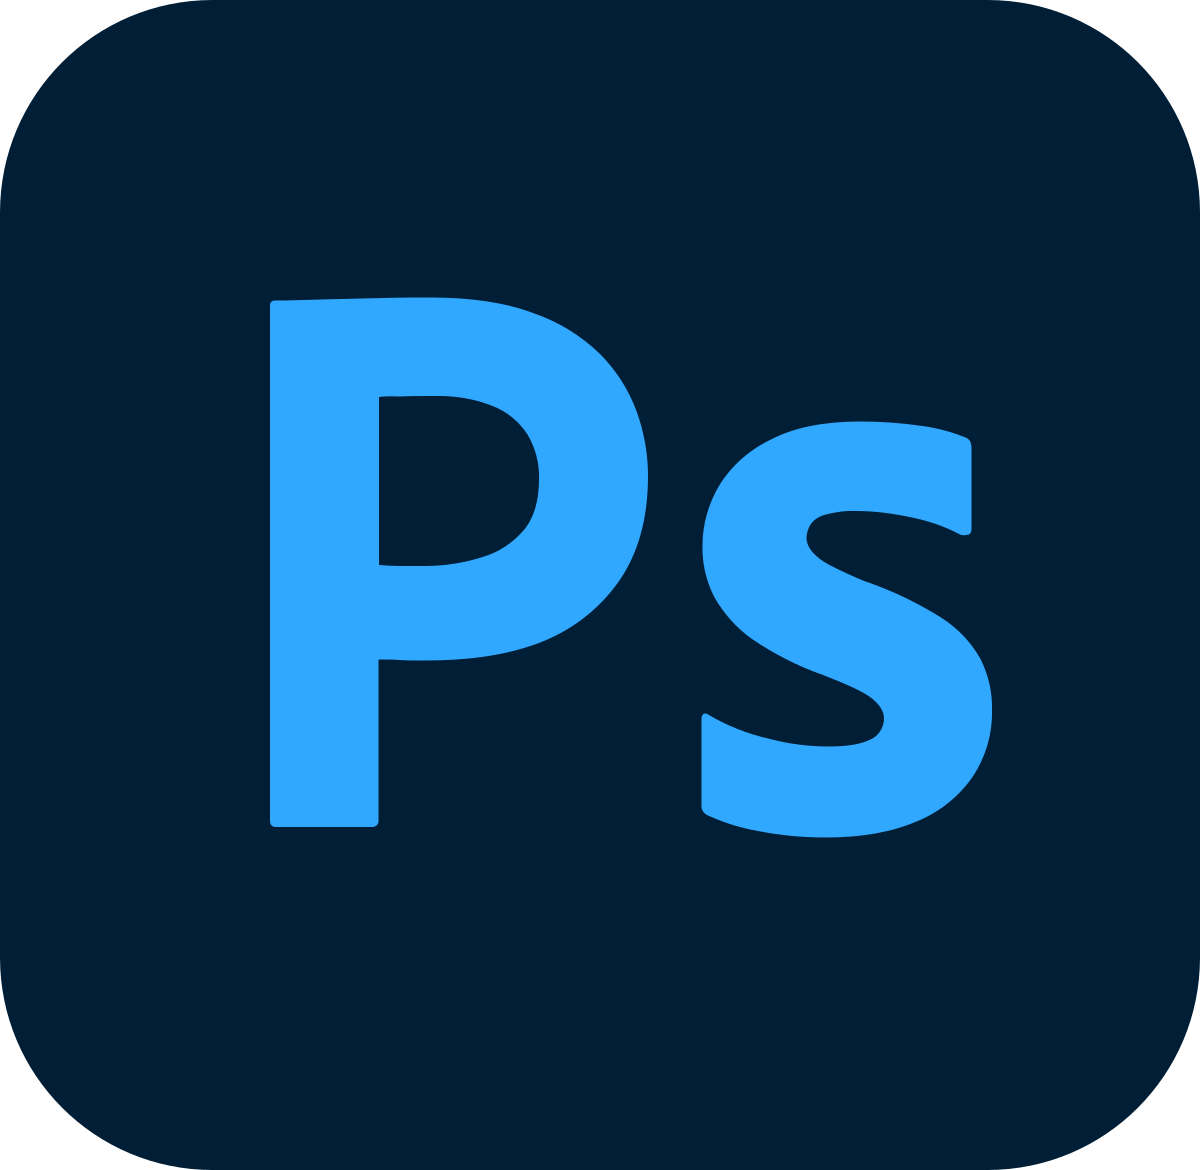 Adobe Photoshop CC - días de semana